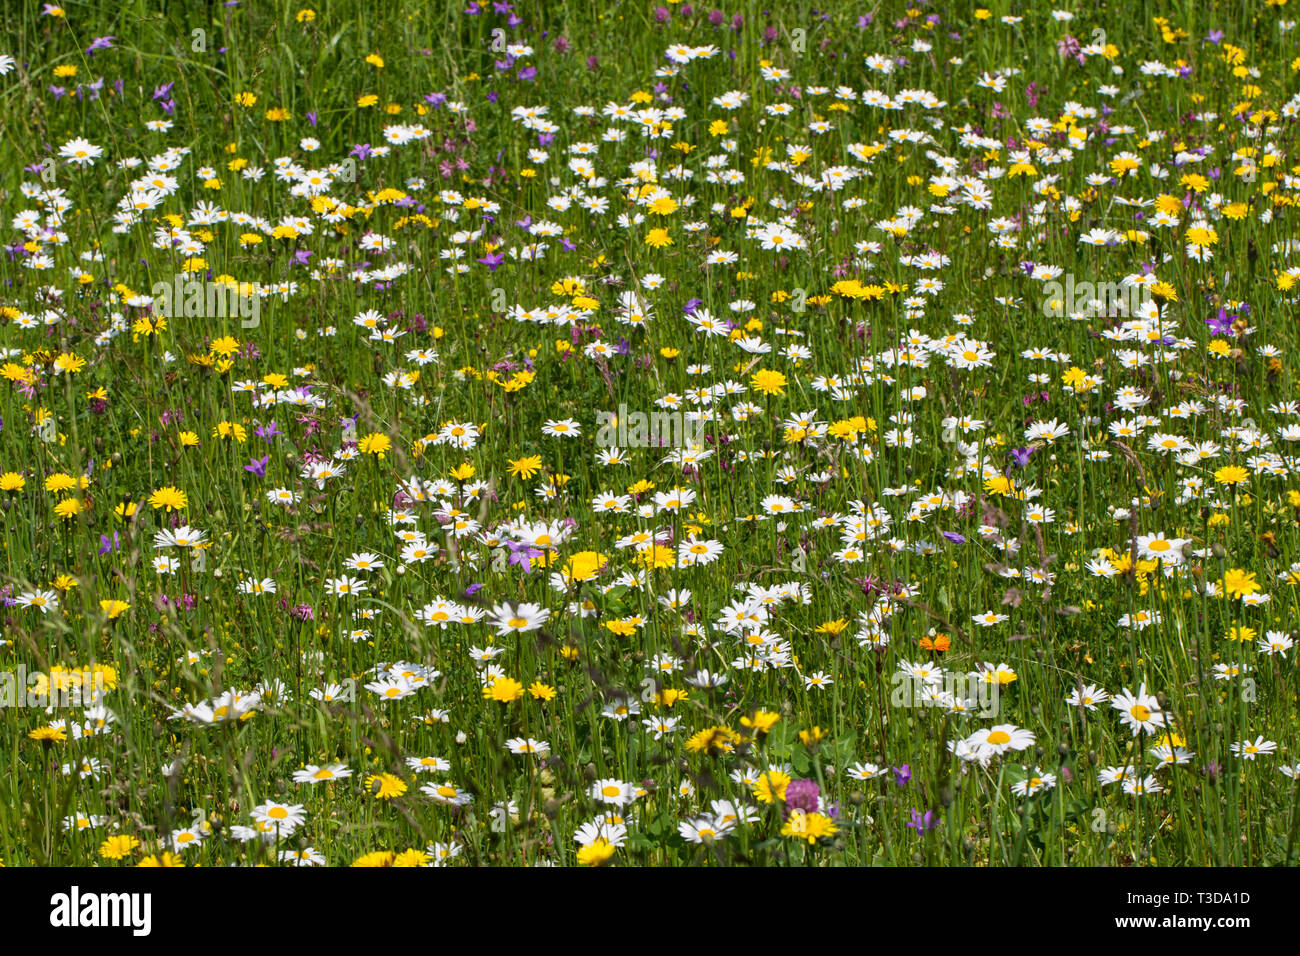 Blumenwiese, flower meadow Stock Photo